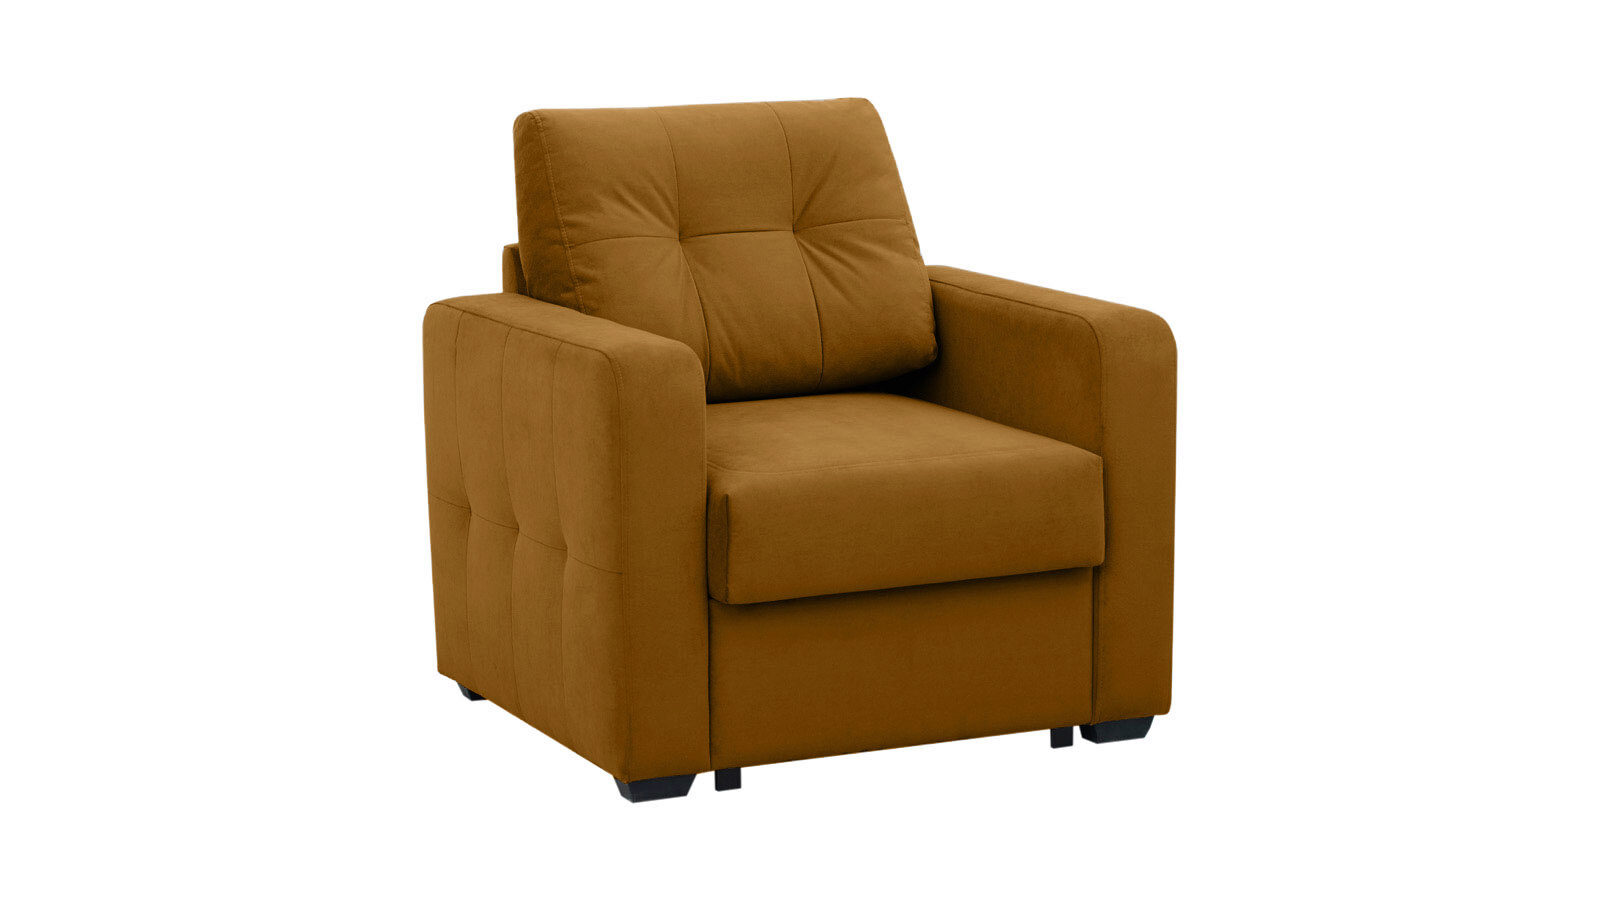 Кресло Loko Casanova с широкими подлокотниками память пена сиденье подушка спина облегчение боли ортопедическая подушка офисное кресло coccyx